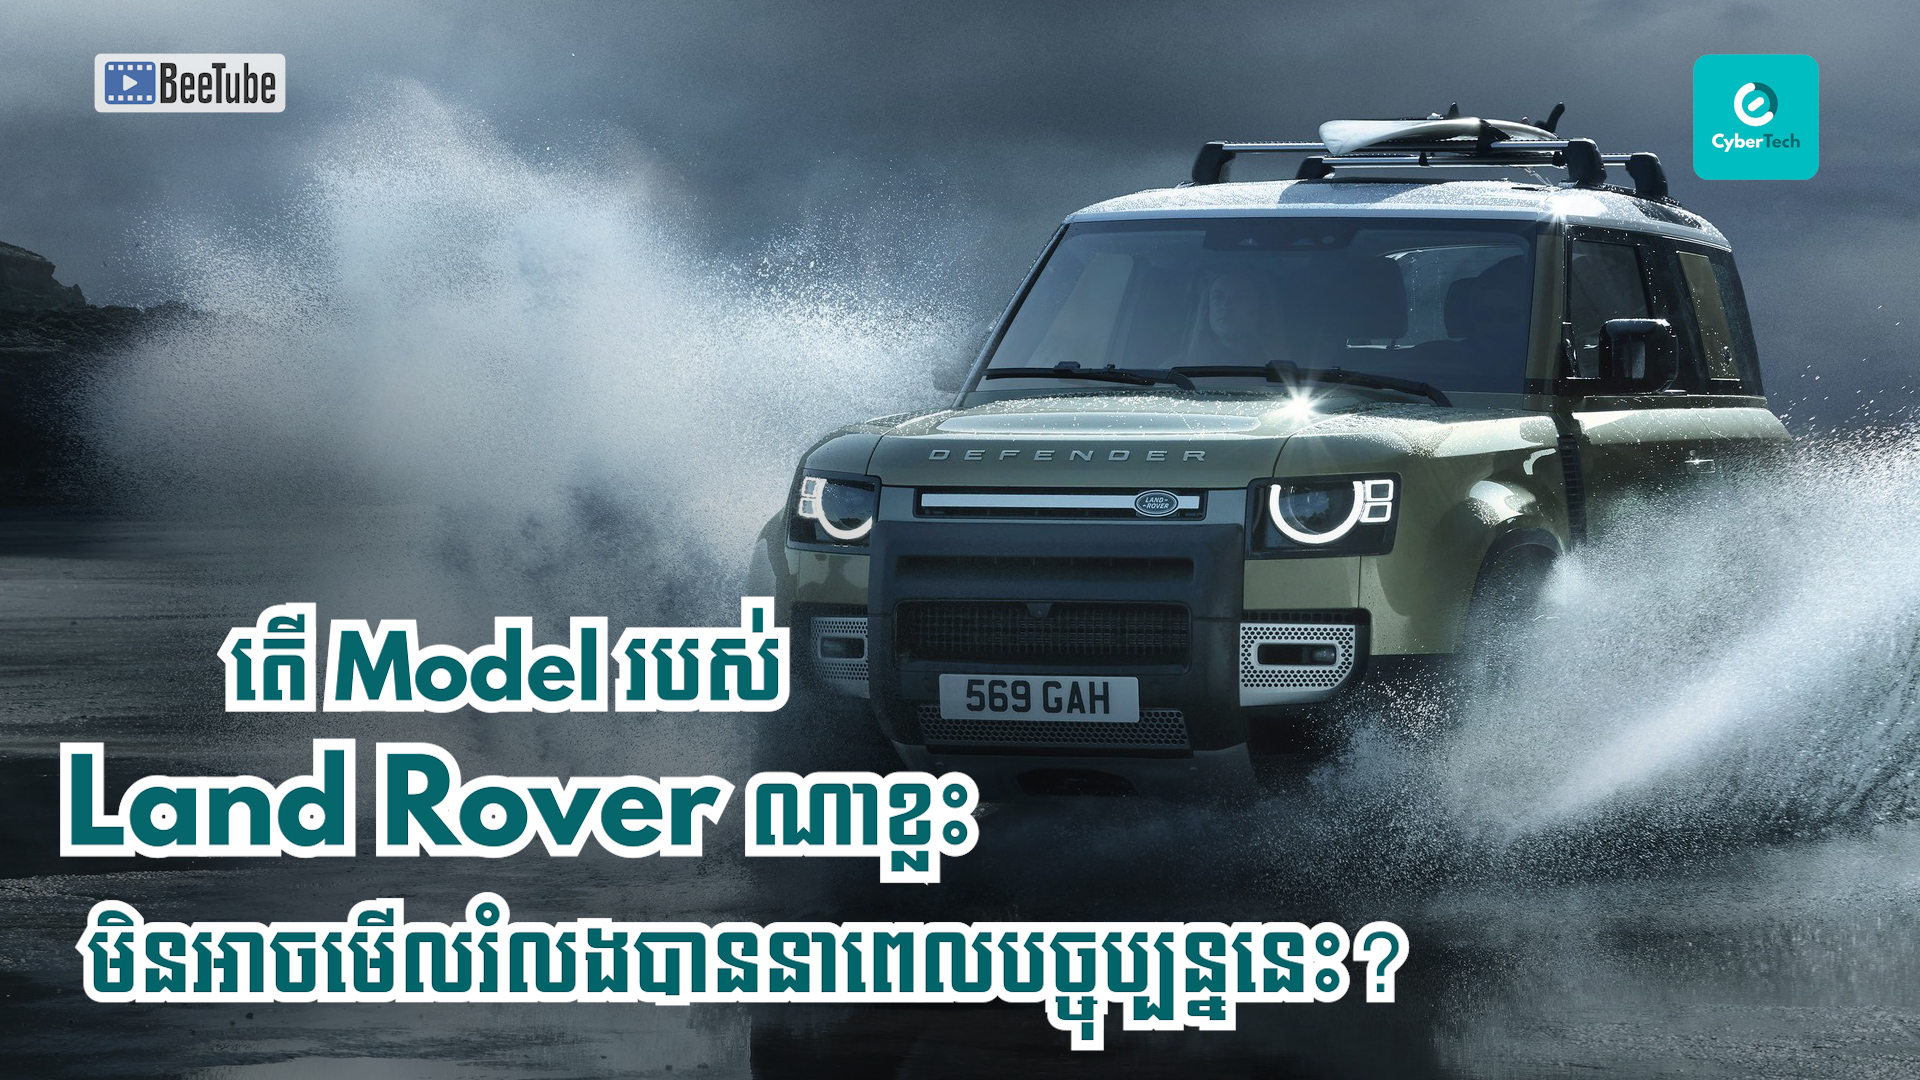 តើ Model របស់ Land Rover ណាខ្លះមិនអាចមើលរំលងបាននាពេលបច្ចុប្បន្ននេះ?